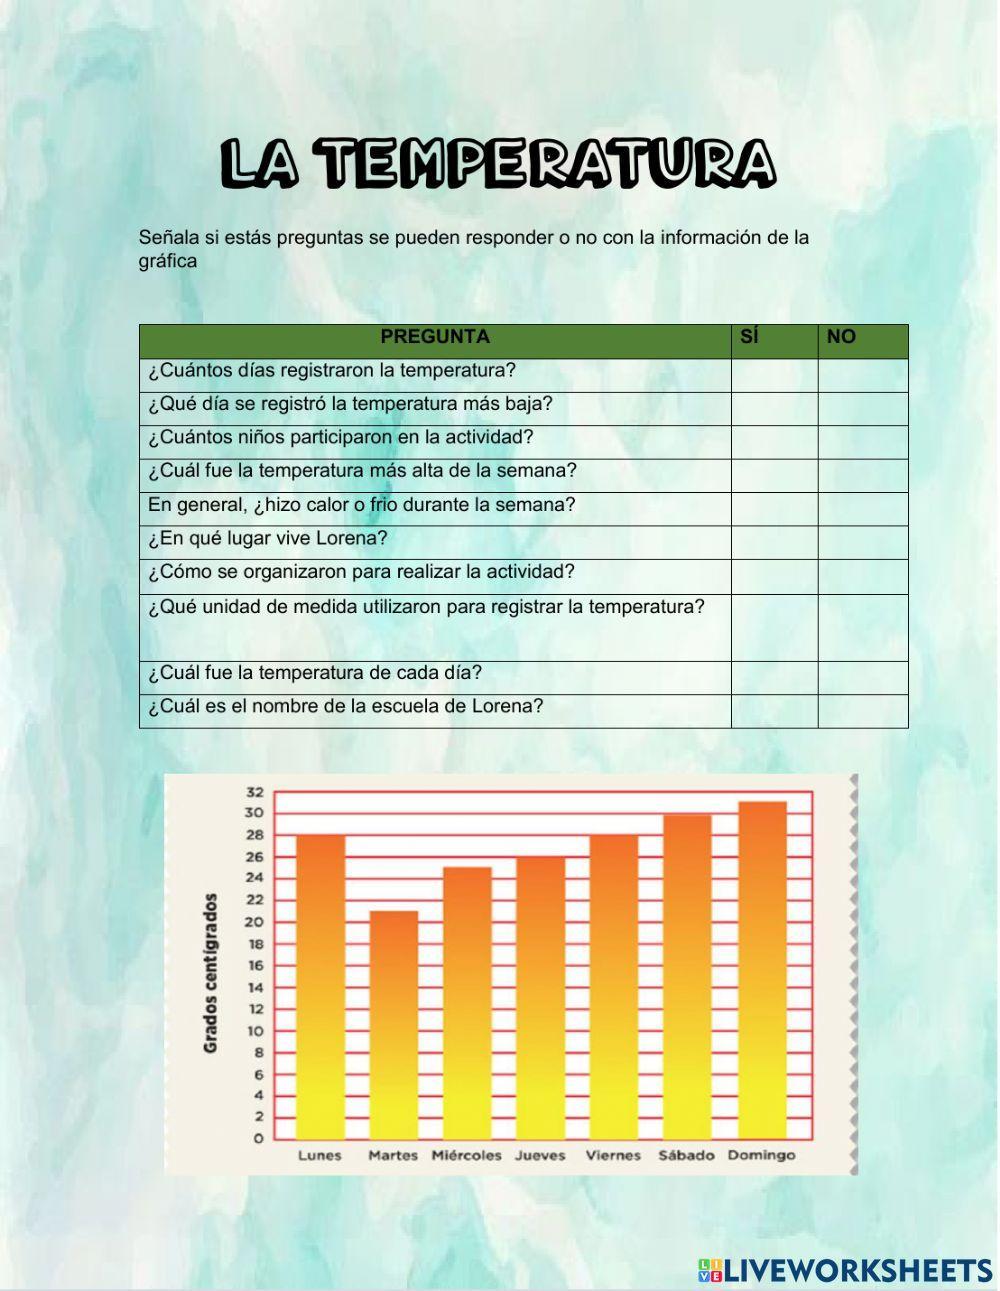 Grafica de barras la temperatura